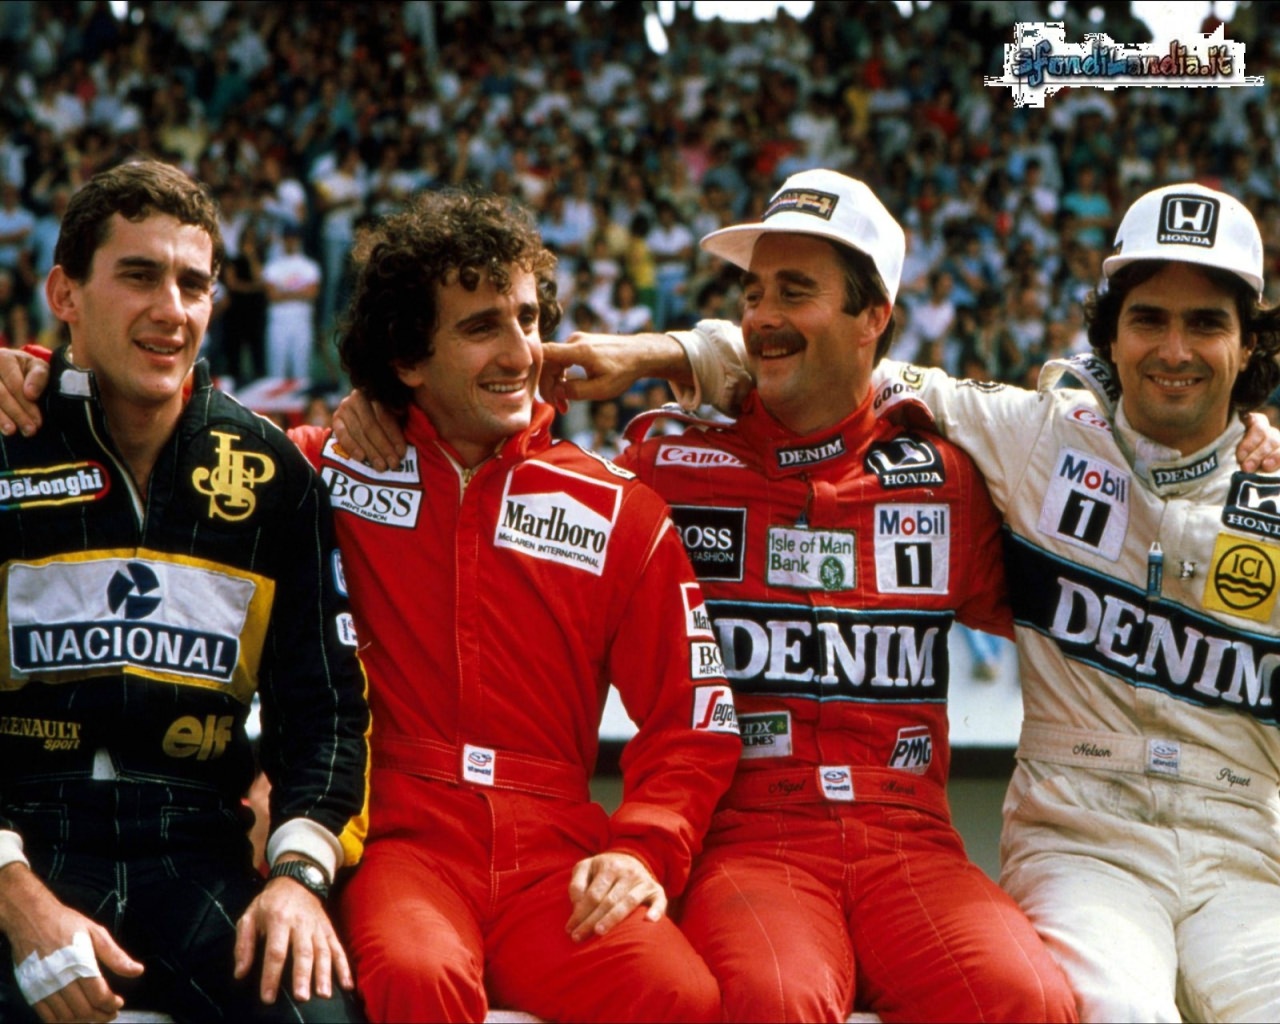 Senna e Prost